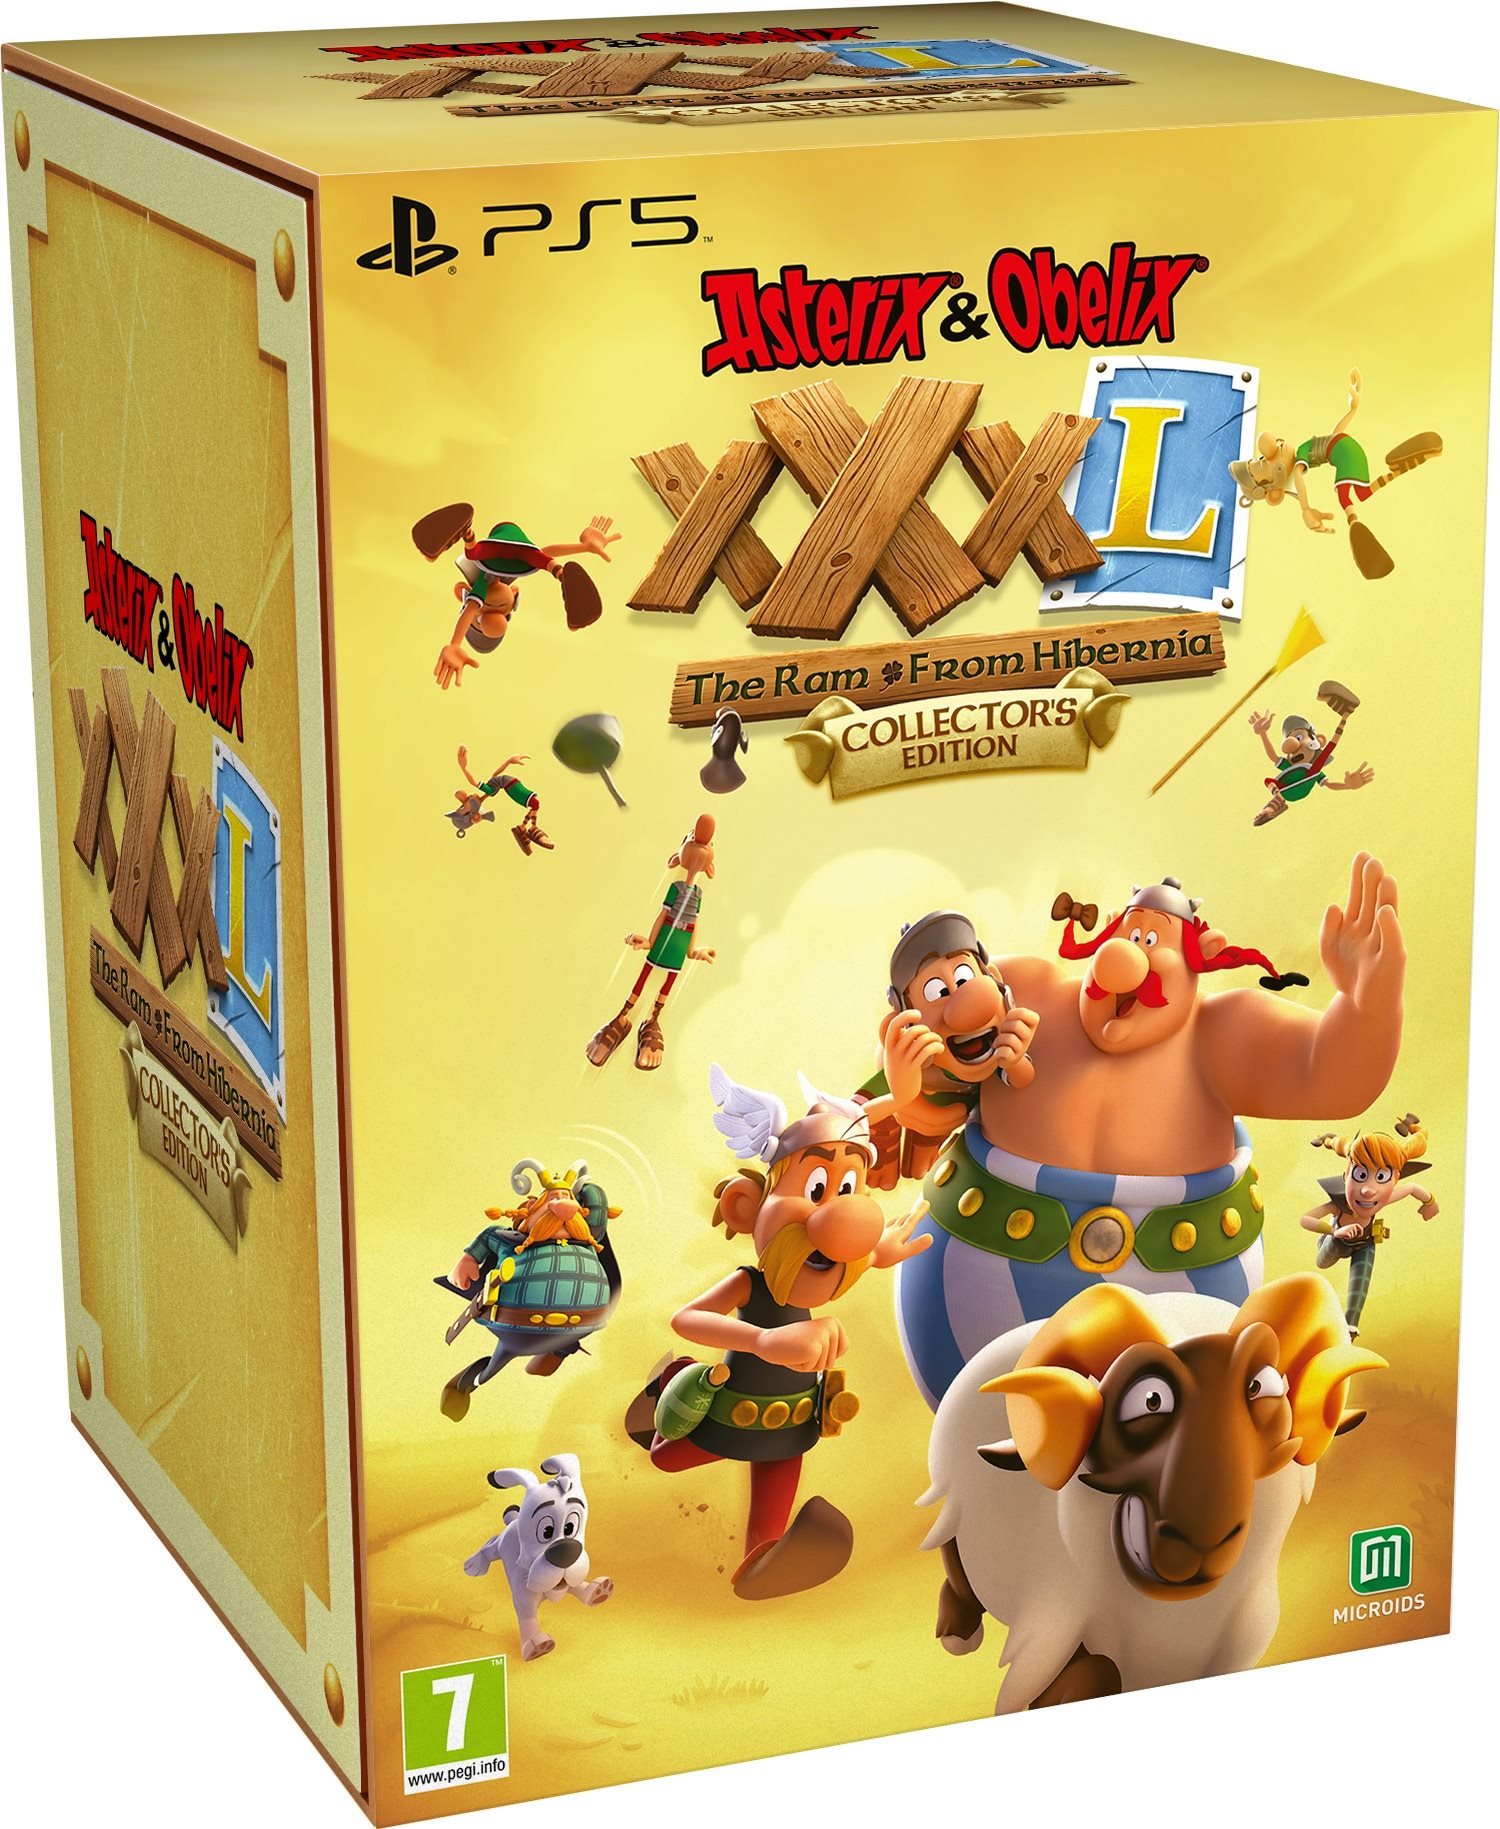 Asterix & Obelix XXXL: The Ram From Hibernia - Collectors Edition - PS5